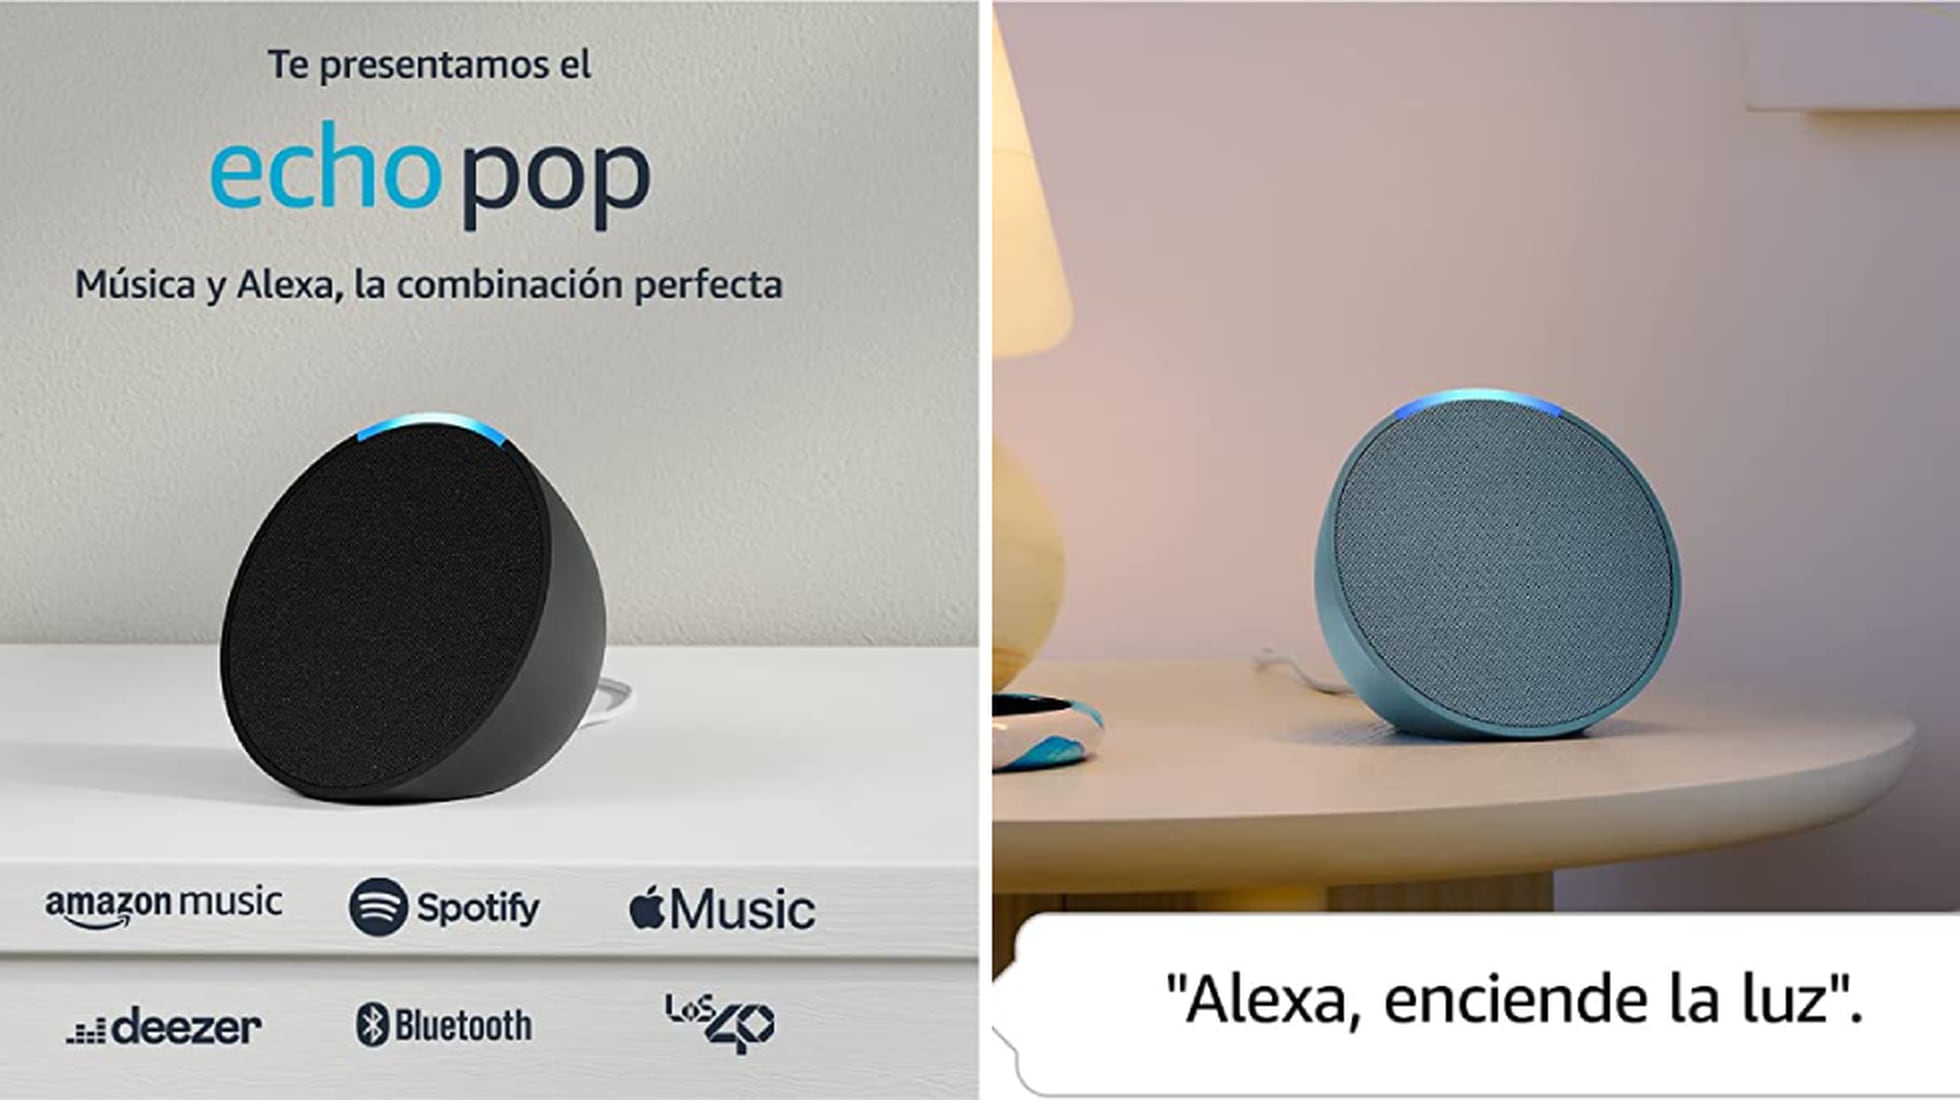 Con un 60% de descuento, este altavoz Echo Pop con Alexa es uno de